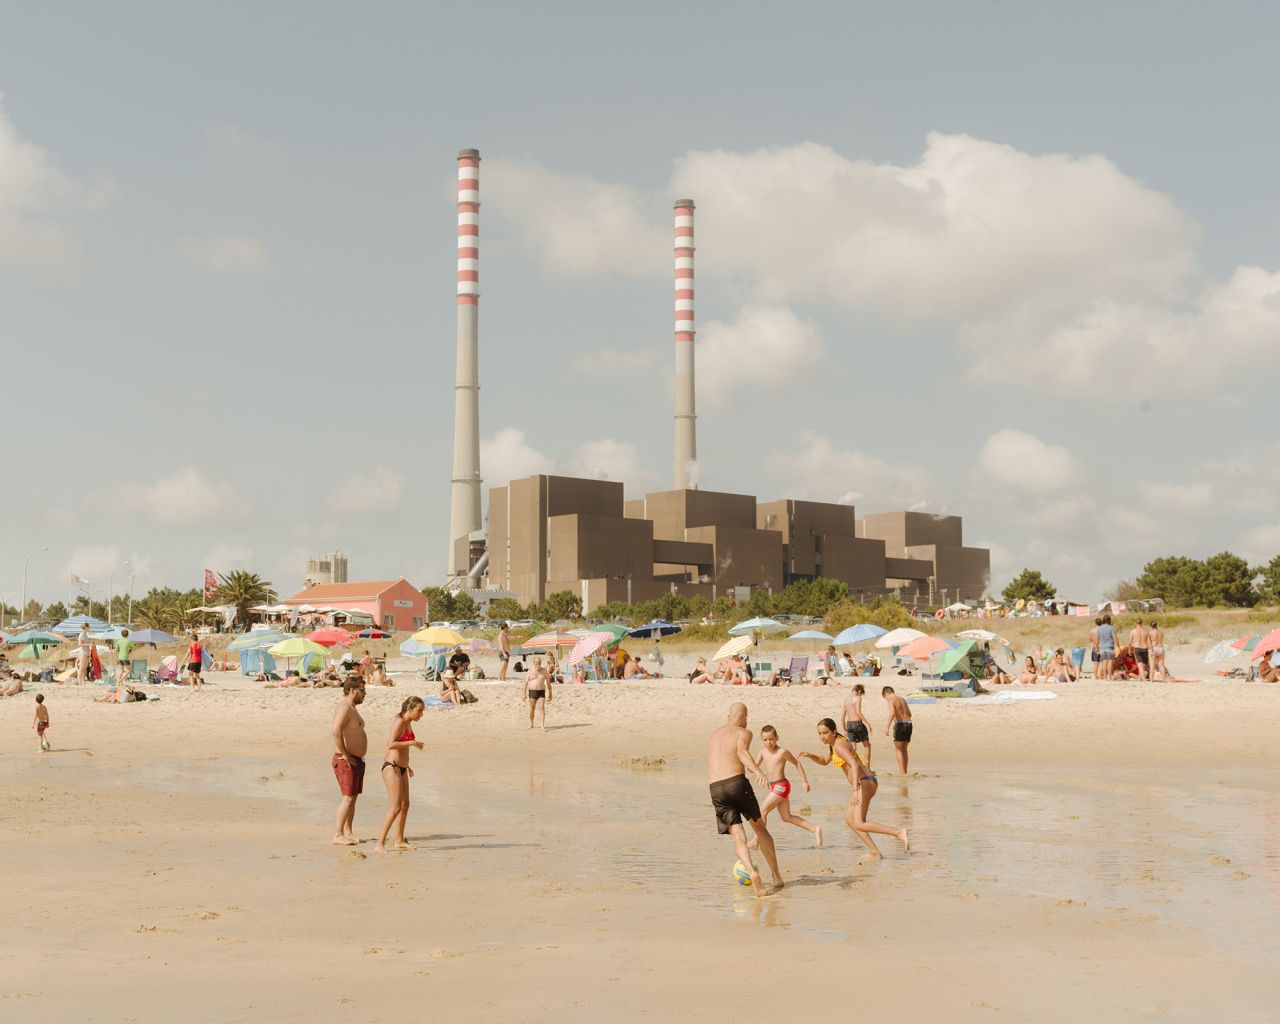 辛斯电厂,葡萄牙2019年 Dan Wilton